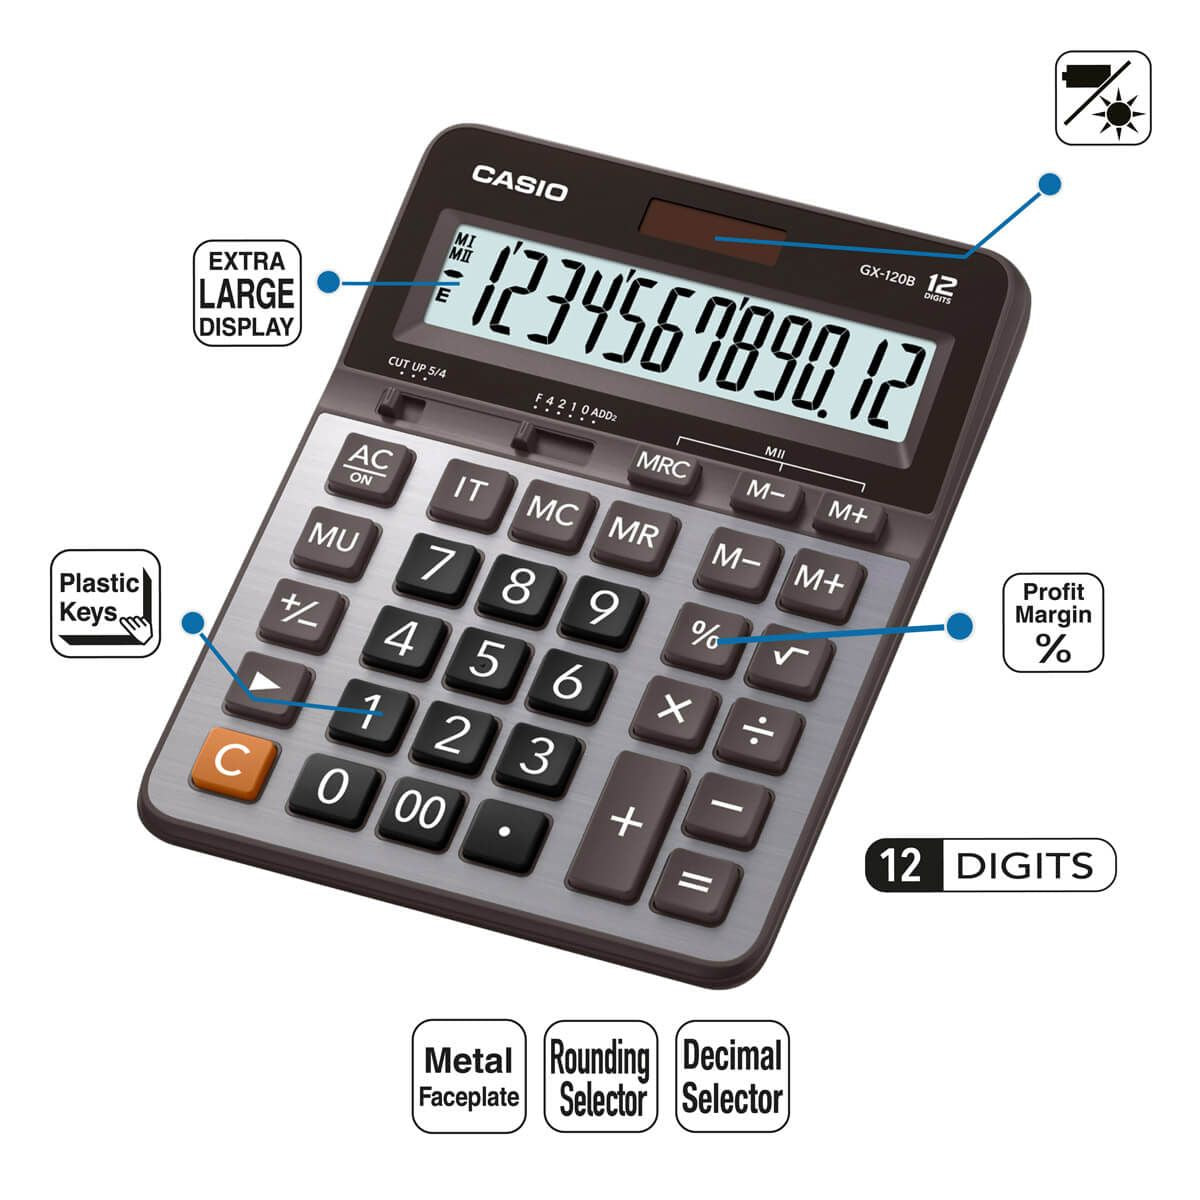 Calculadora de Escritorio Casio Gx-120b 12 Dígitos Cuadrada